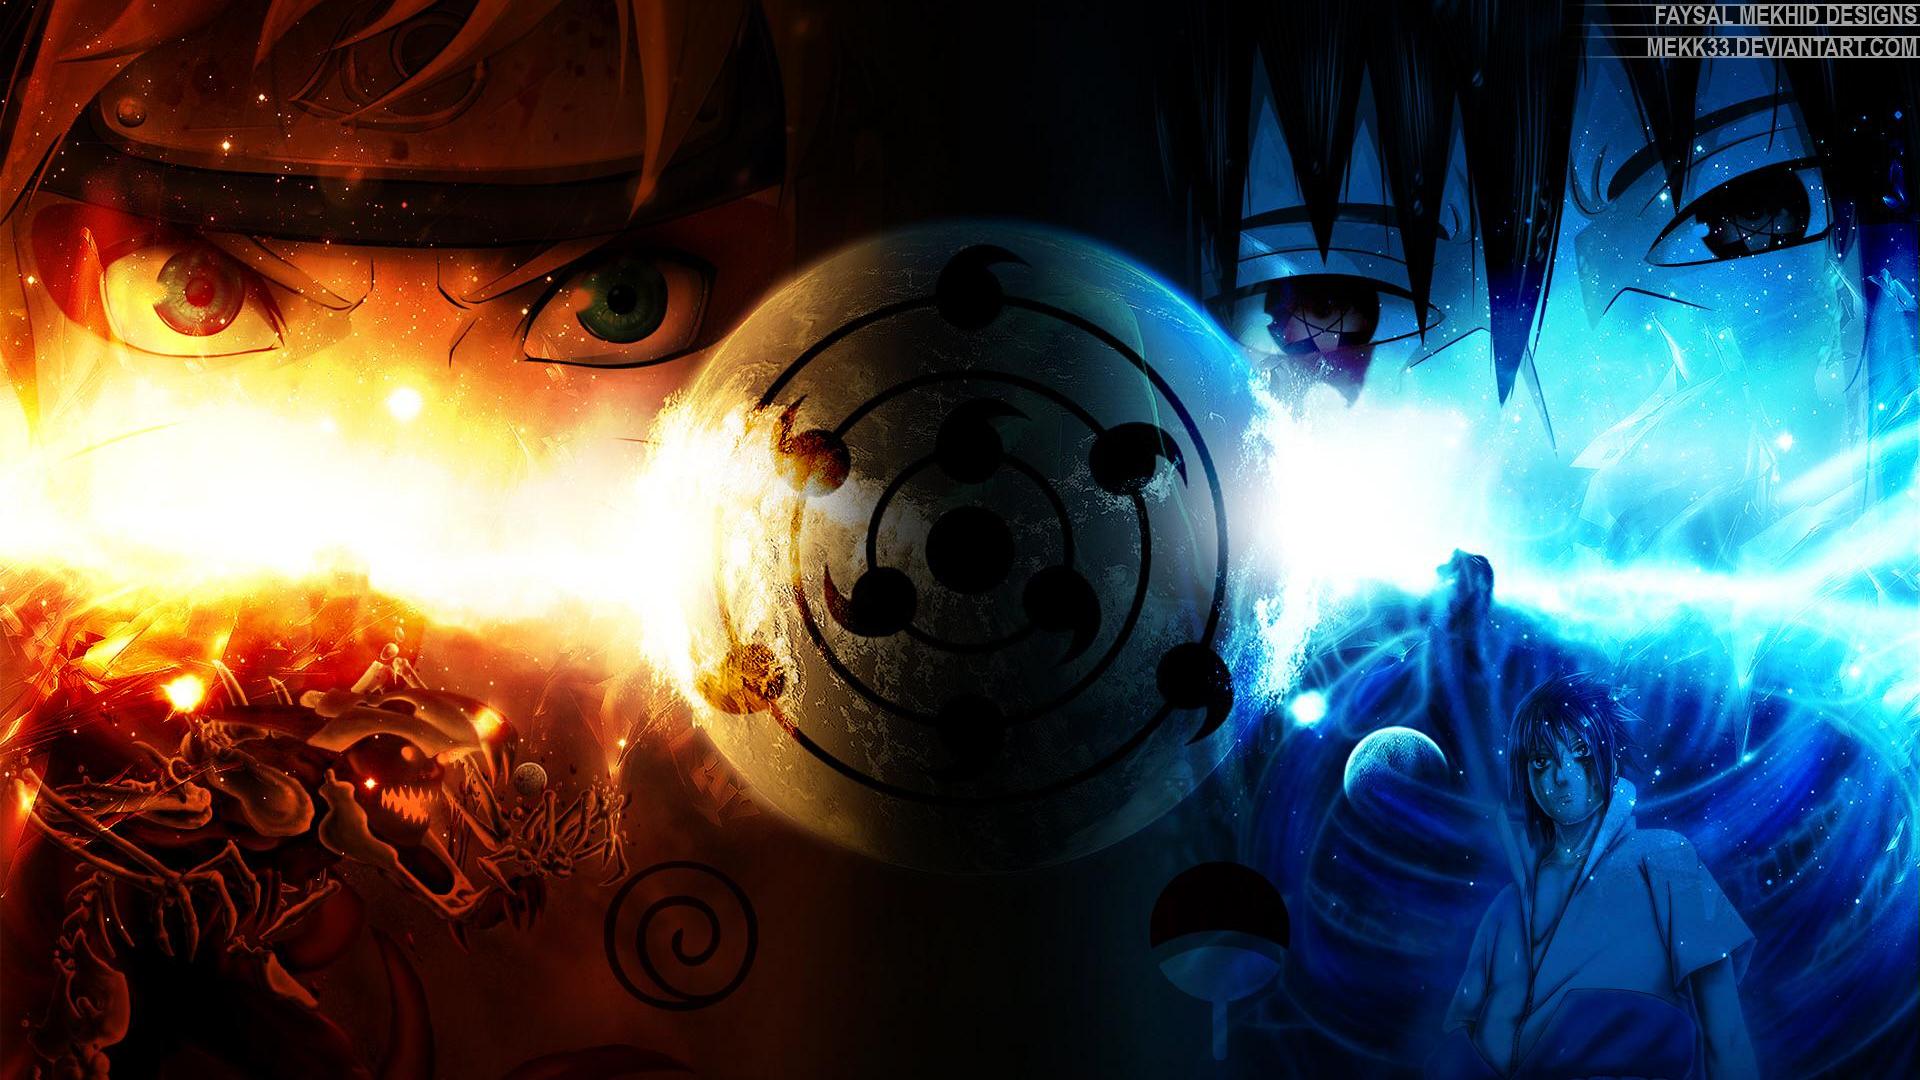 Naruto and sasuke - - High Quality and Resolution